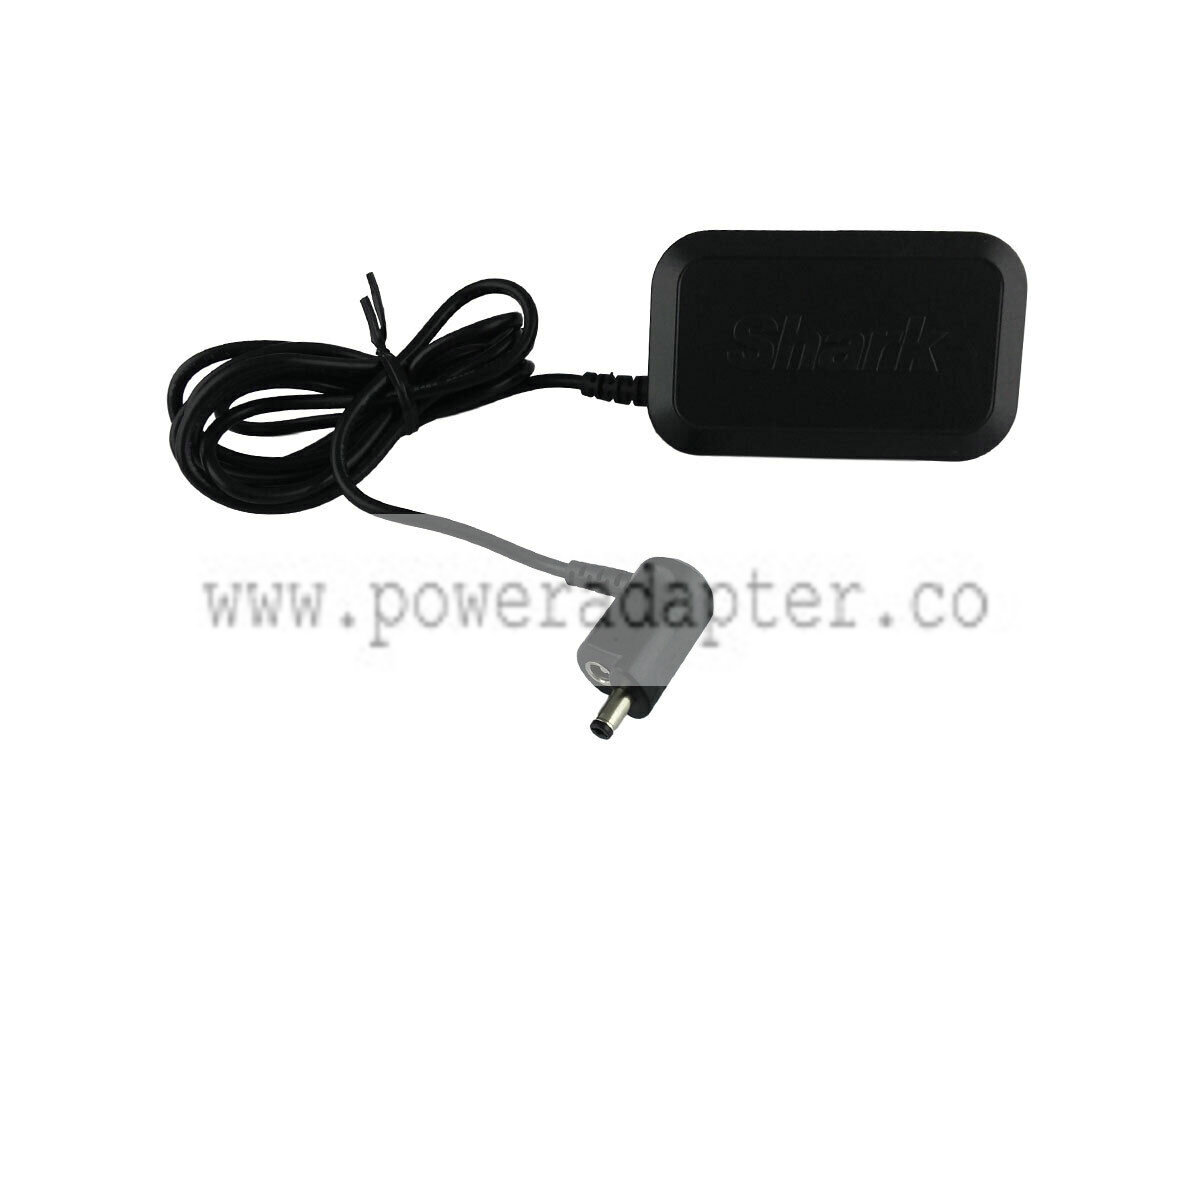 Original SHARK YLS0483A-T2880802 Power Adapter Cable Cord Box Adaptor input:100-240v 50-60hz 1.6a output: 28.8v 800ma - Click Image to Close